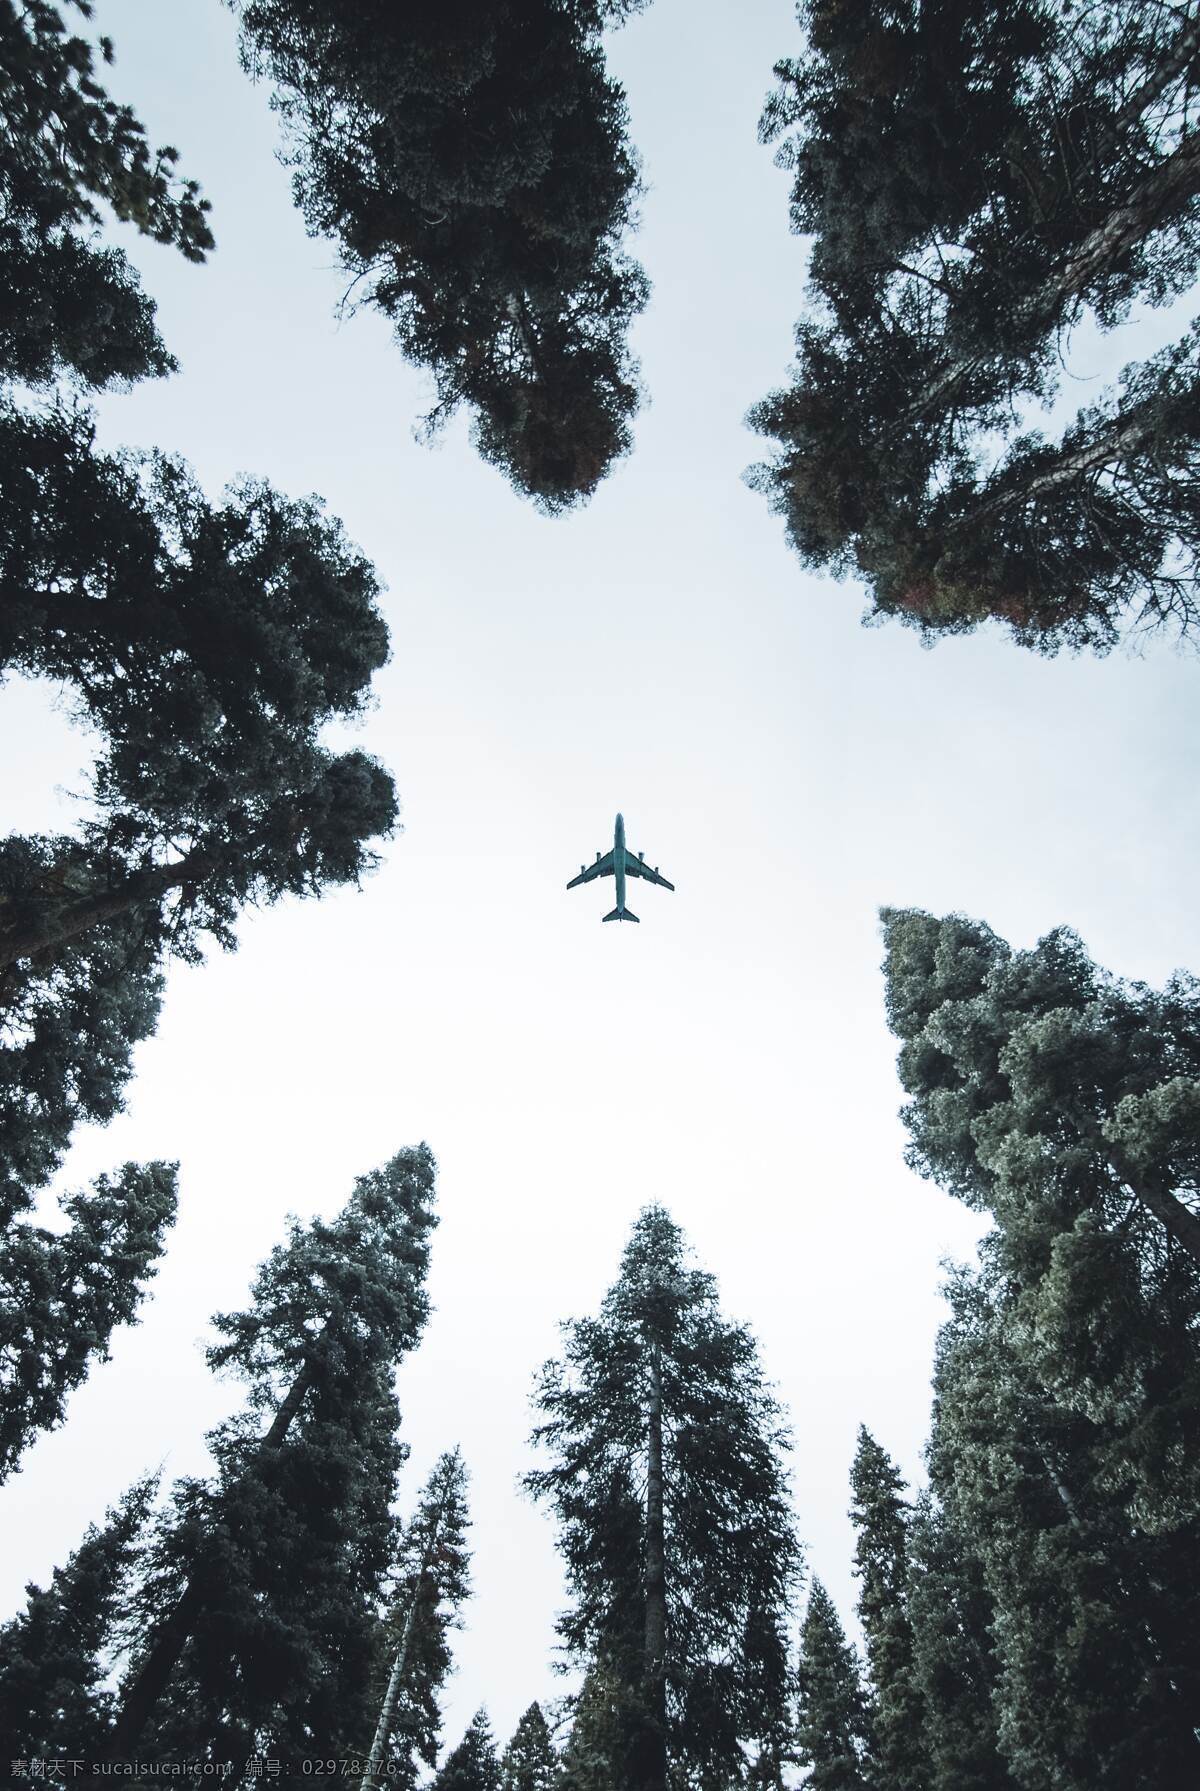 飞机 飞过 天空 天 仰视 仰望 树林 森林 树木 树 构图 创意 文艺 清新 气质 仰望天空 旅行 旅游 说走就走 现代科技 交通工具